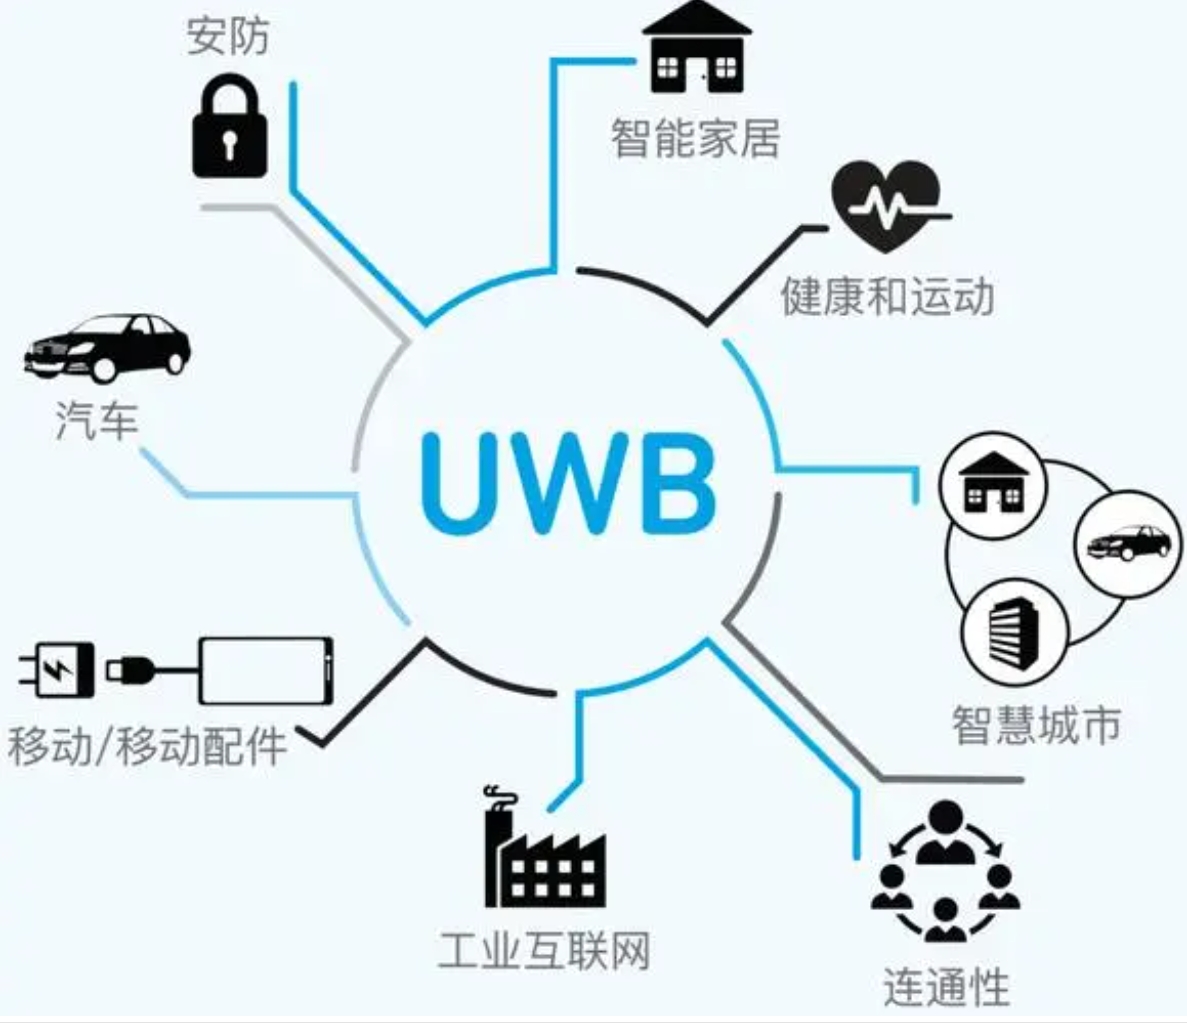 高频次使用UWB这个技术的场景有哪些？怎么推广UWB？